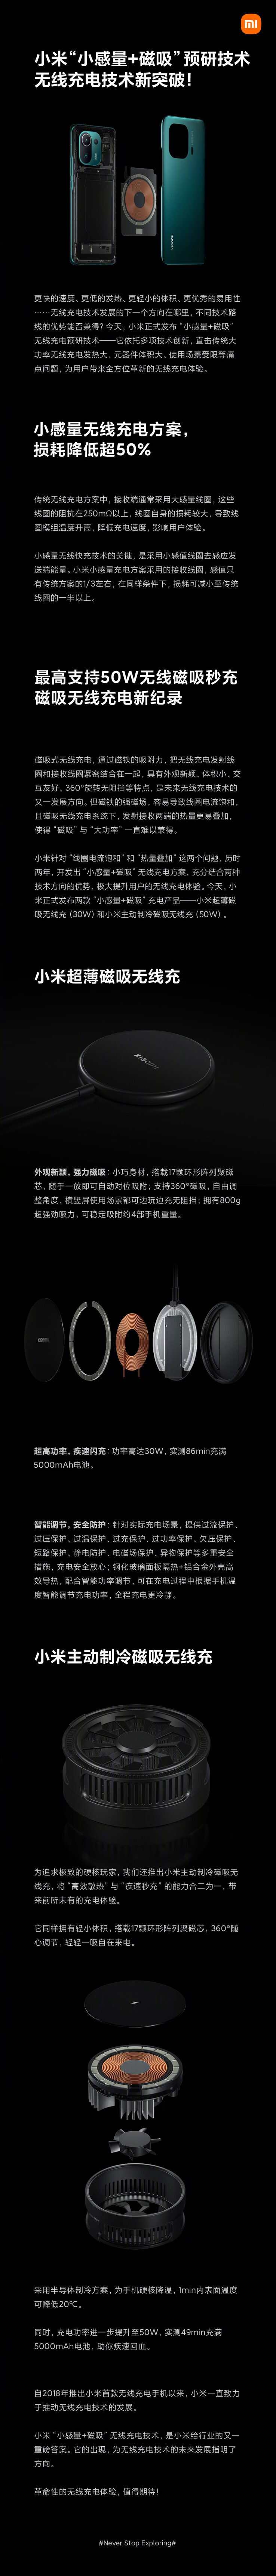 Xiaomi presenta una infografía sobre su nueva tecnología de carga inalámbrica. (Fuente: Xiaomi vía Weibo)